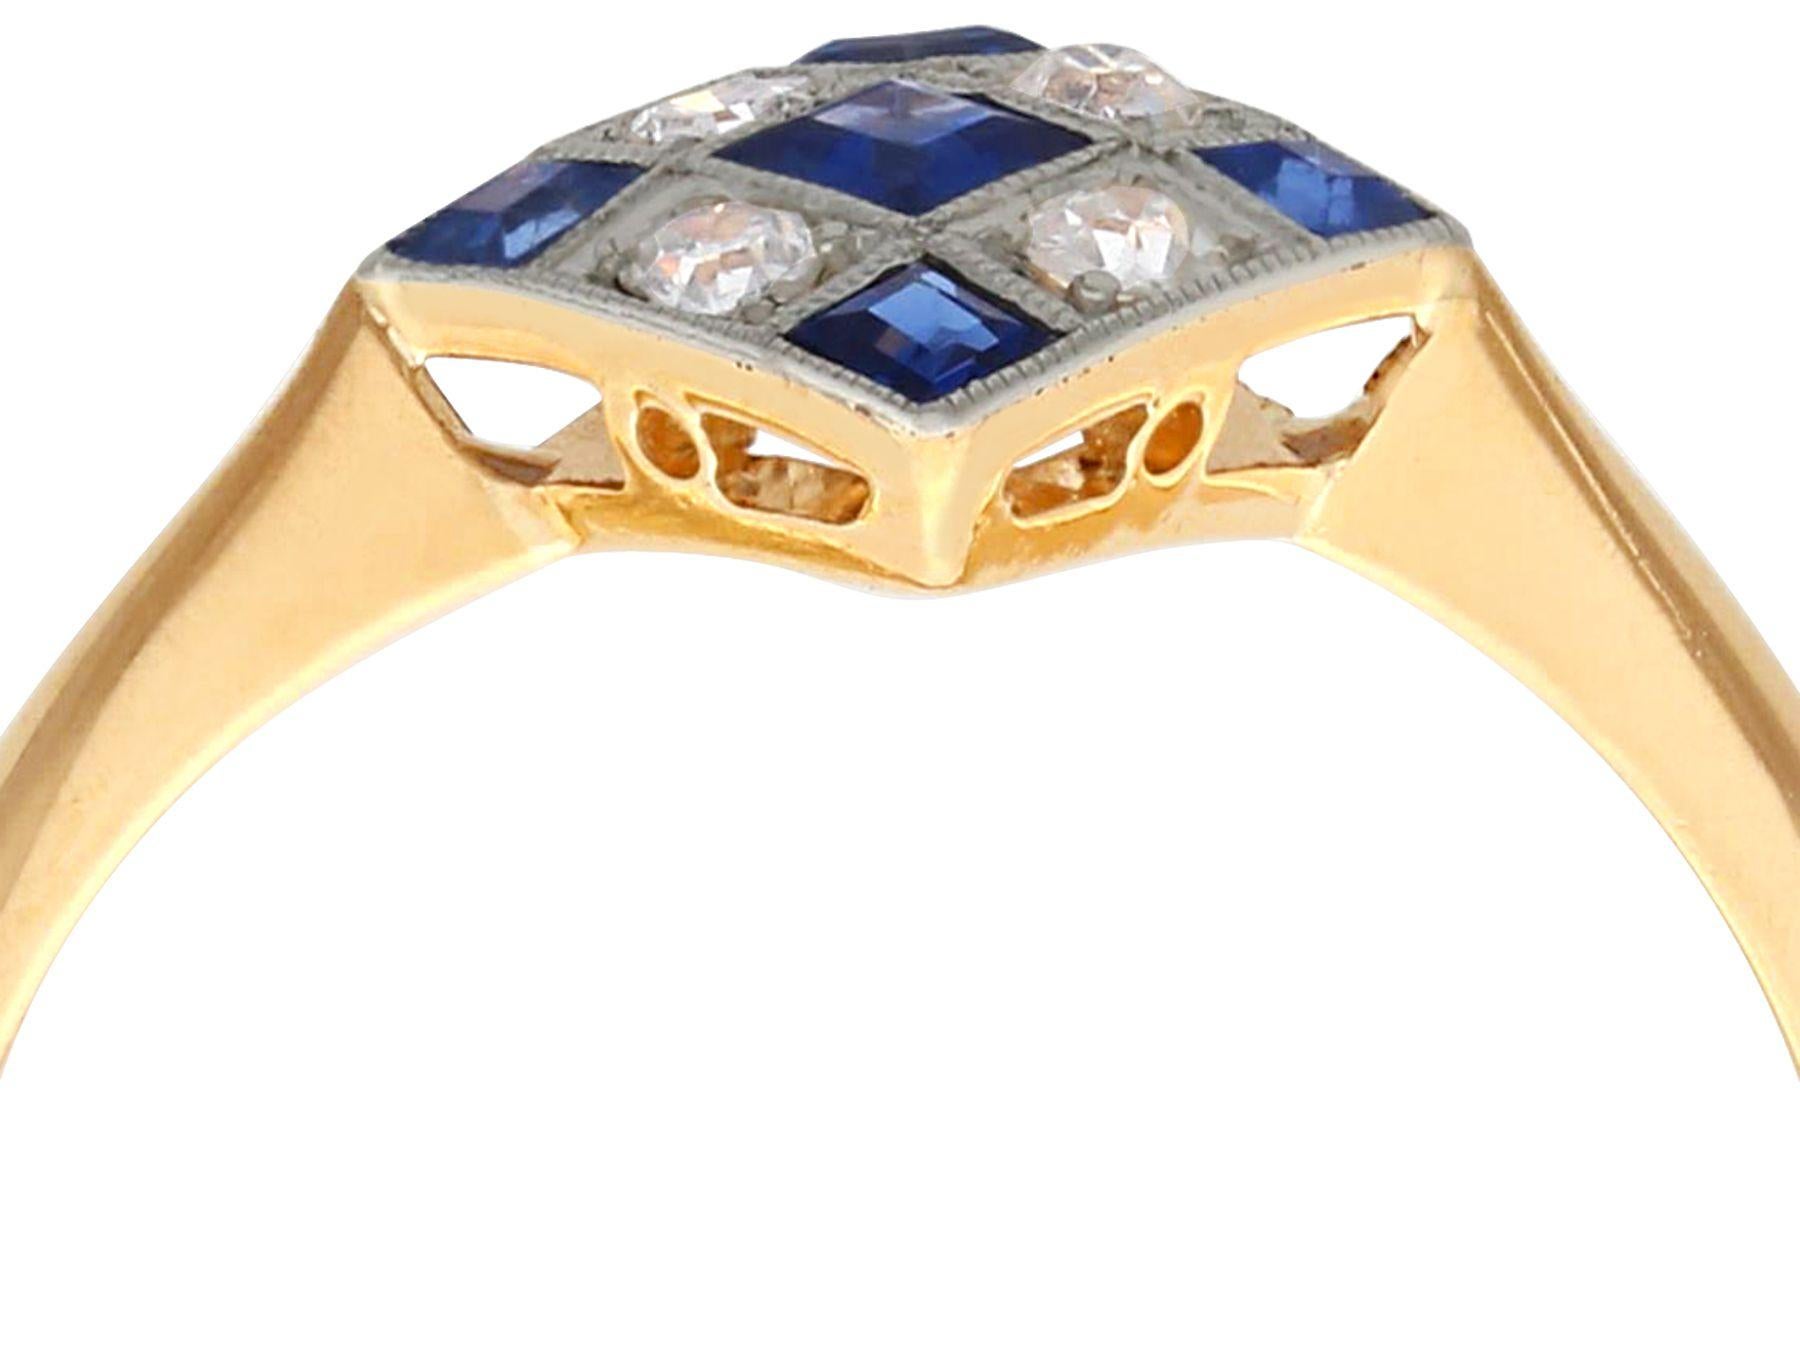 Ein beeindruckender antiker und zeitgenössischer Ring aus 22-karätigem Gold mit 0,28 Karat Saphir und 0,12 Karat Diamant; Teil unserer vielfältigen Edelsteinschmuck-Kollektionen.

Dieser feine und beeindruckende Saphir- und Diamantring ist aus 22